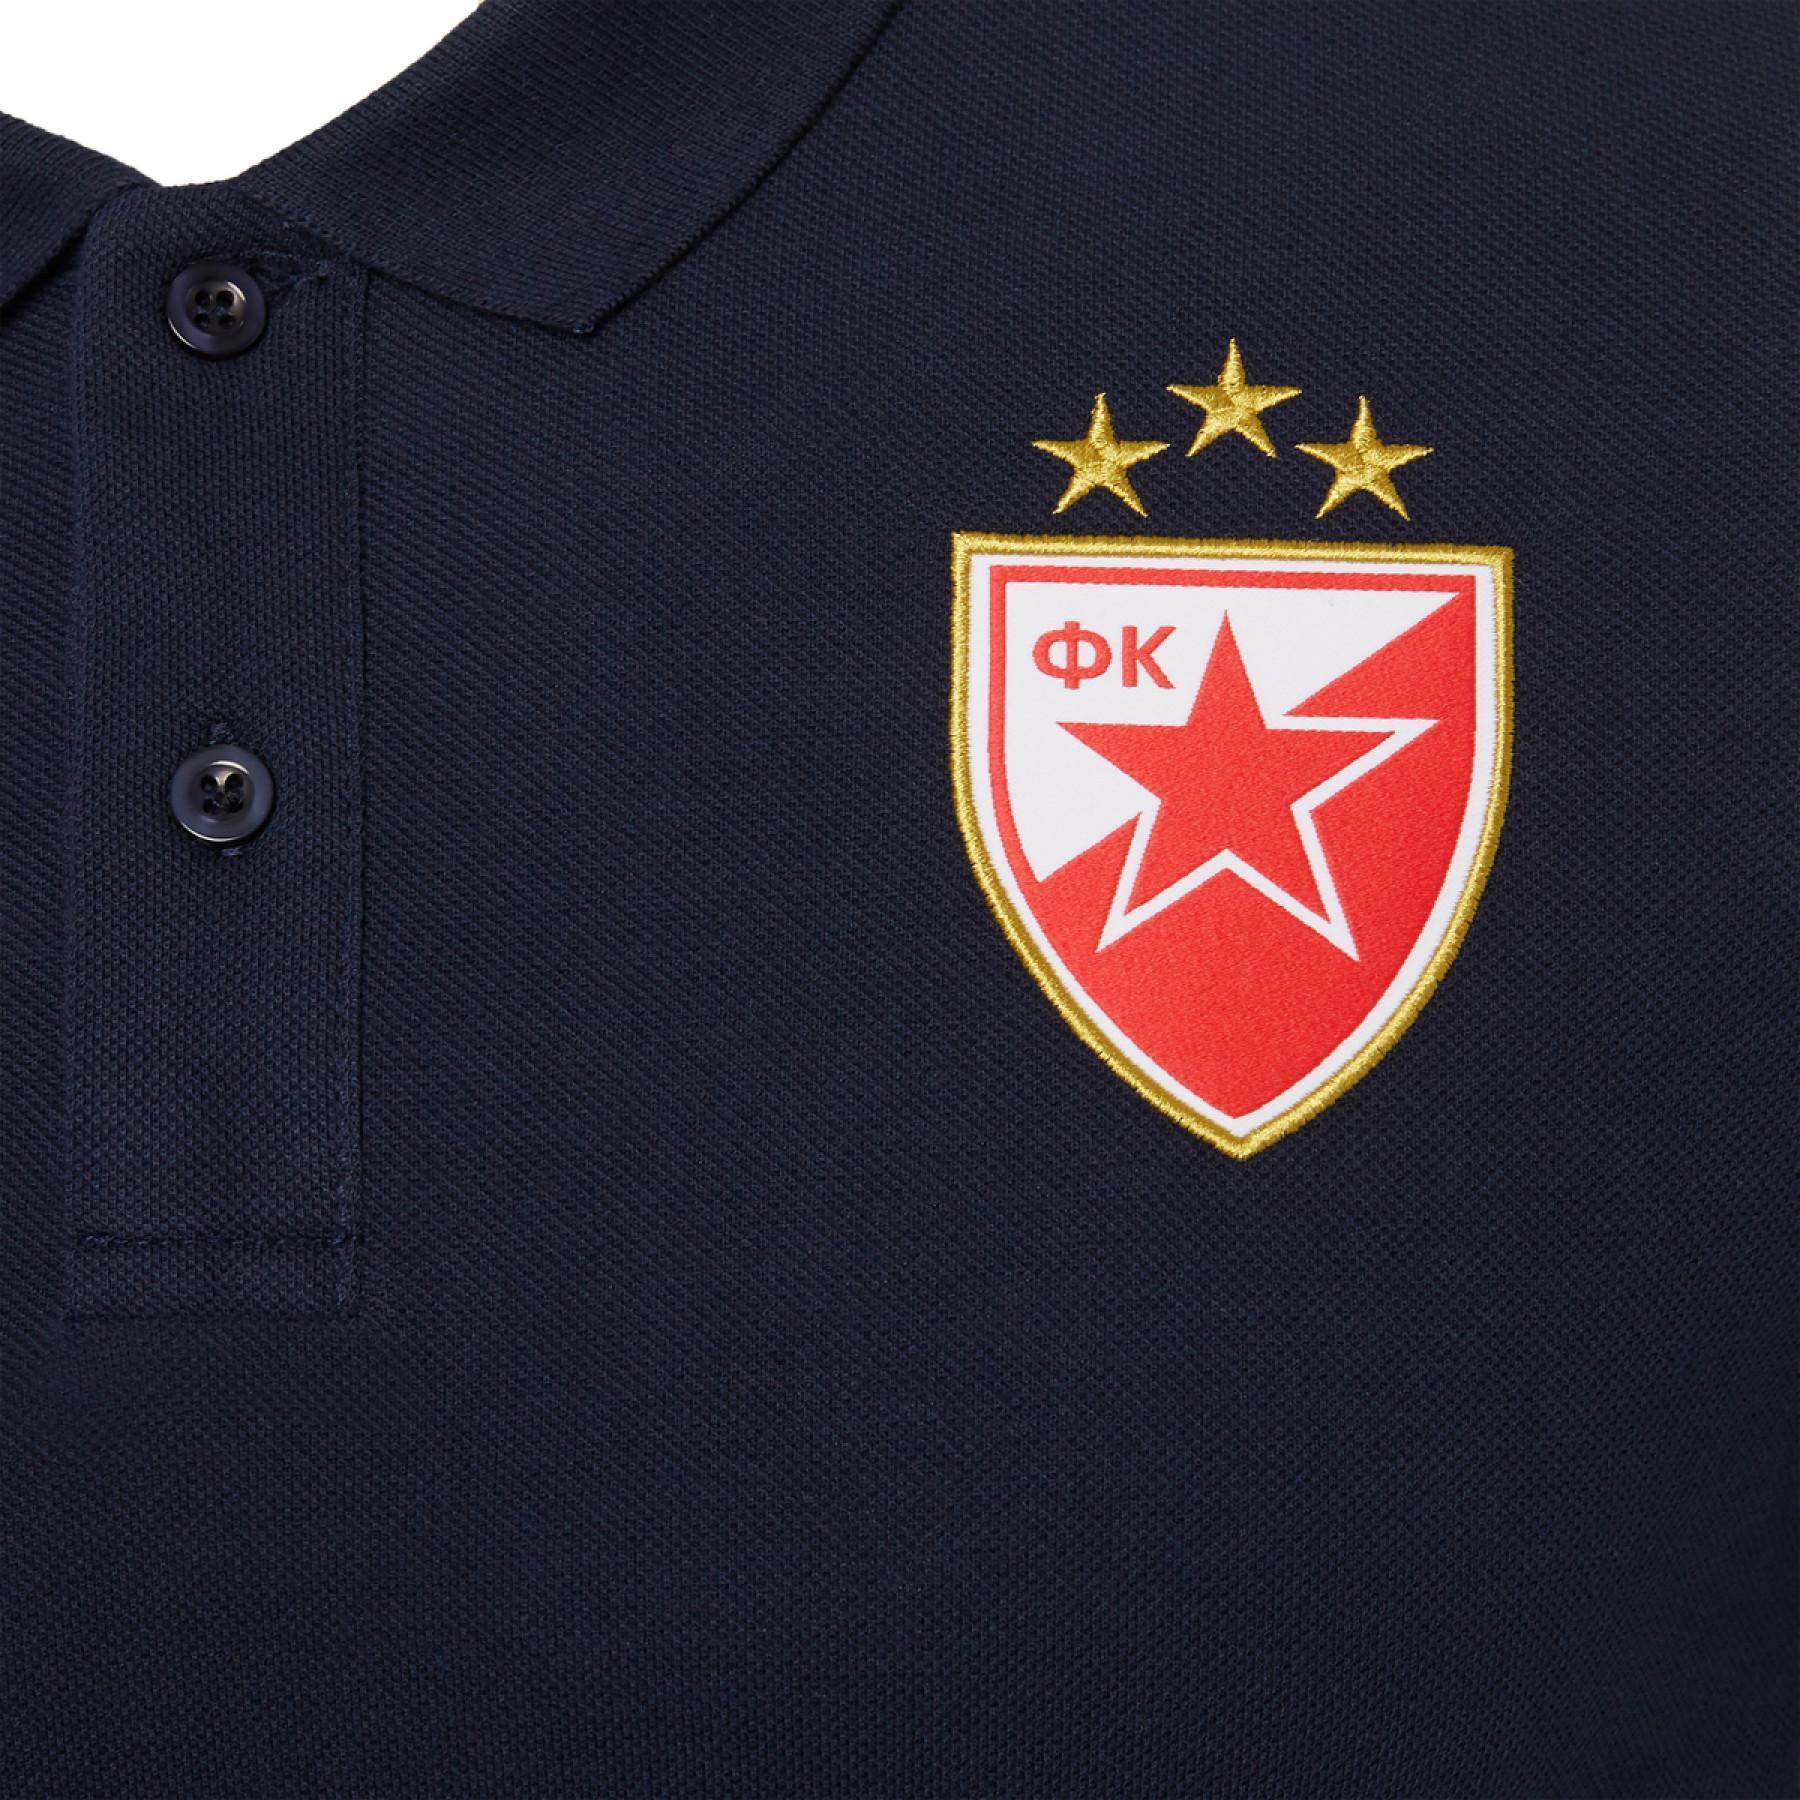 Pracownicy polo Star Belgrade 2020/21